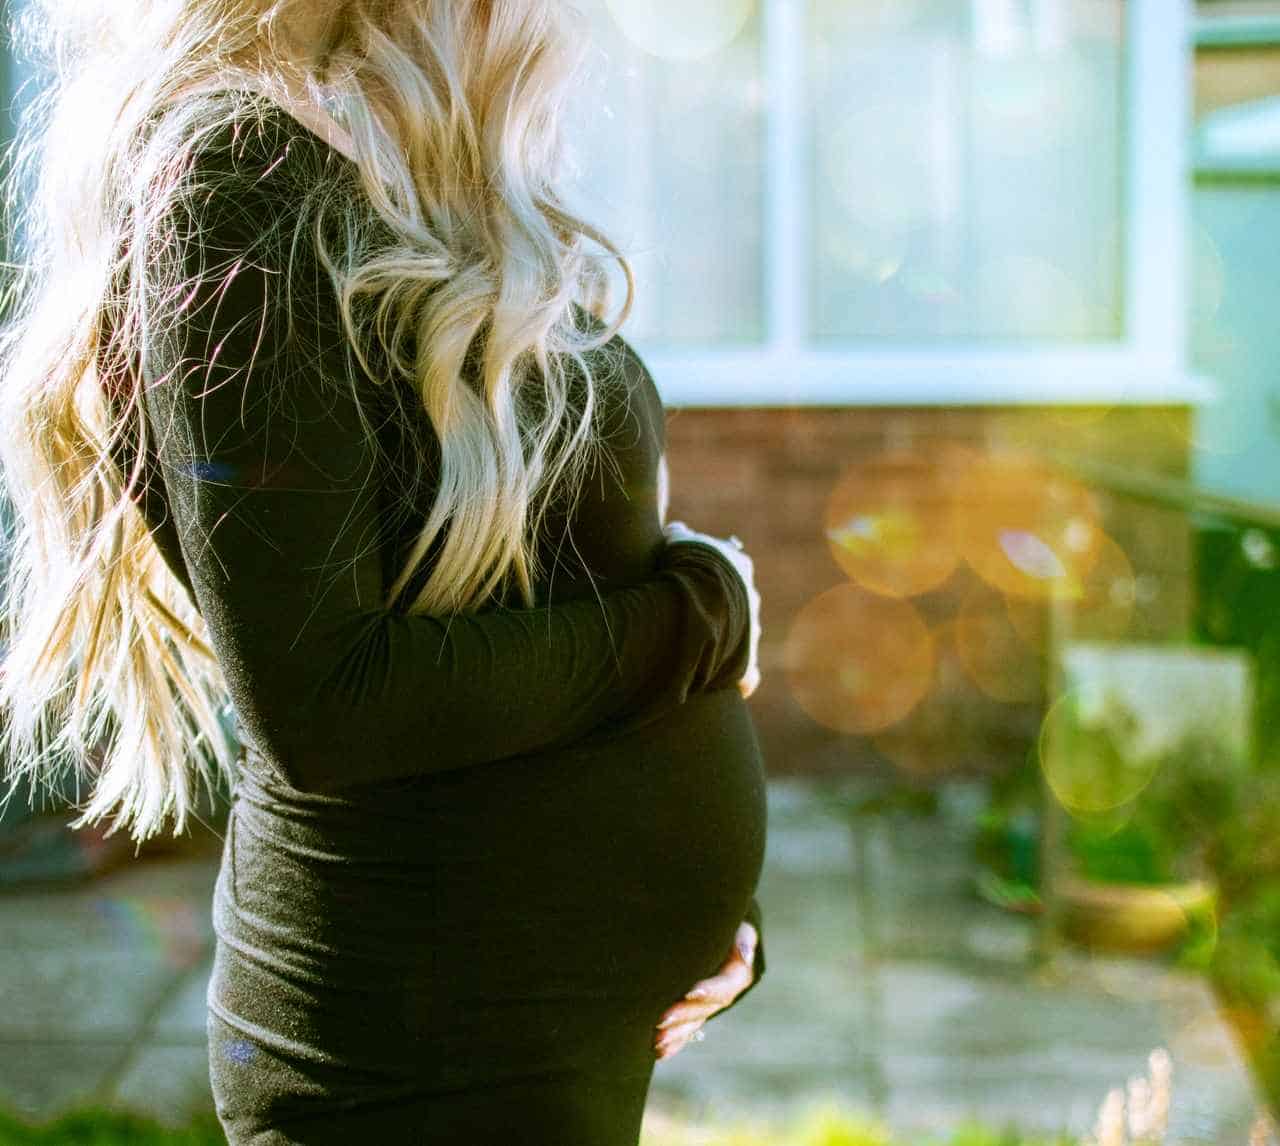 Όταν το άσθμα είναι ελεγχόμενο κατά τη διάρκεια της εγκυμοσύνης δεν αυξάνει τον κίνδυνο επιπλοκών για τη μητέρα ή το έμβρυο. 